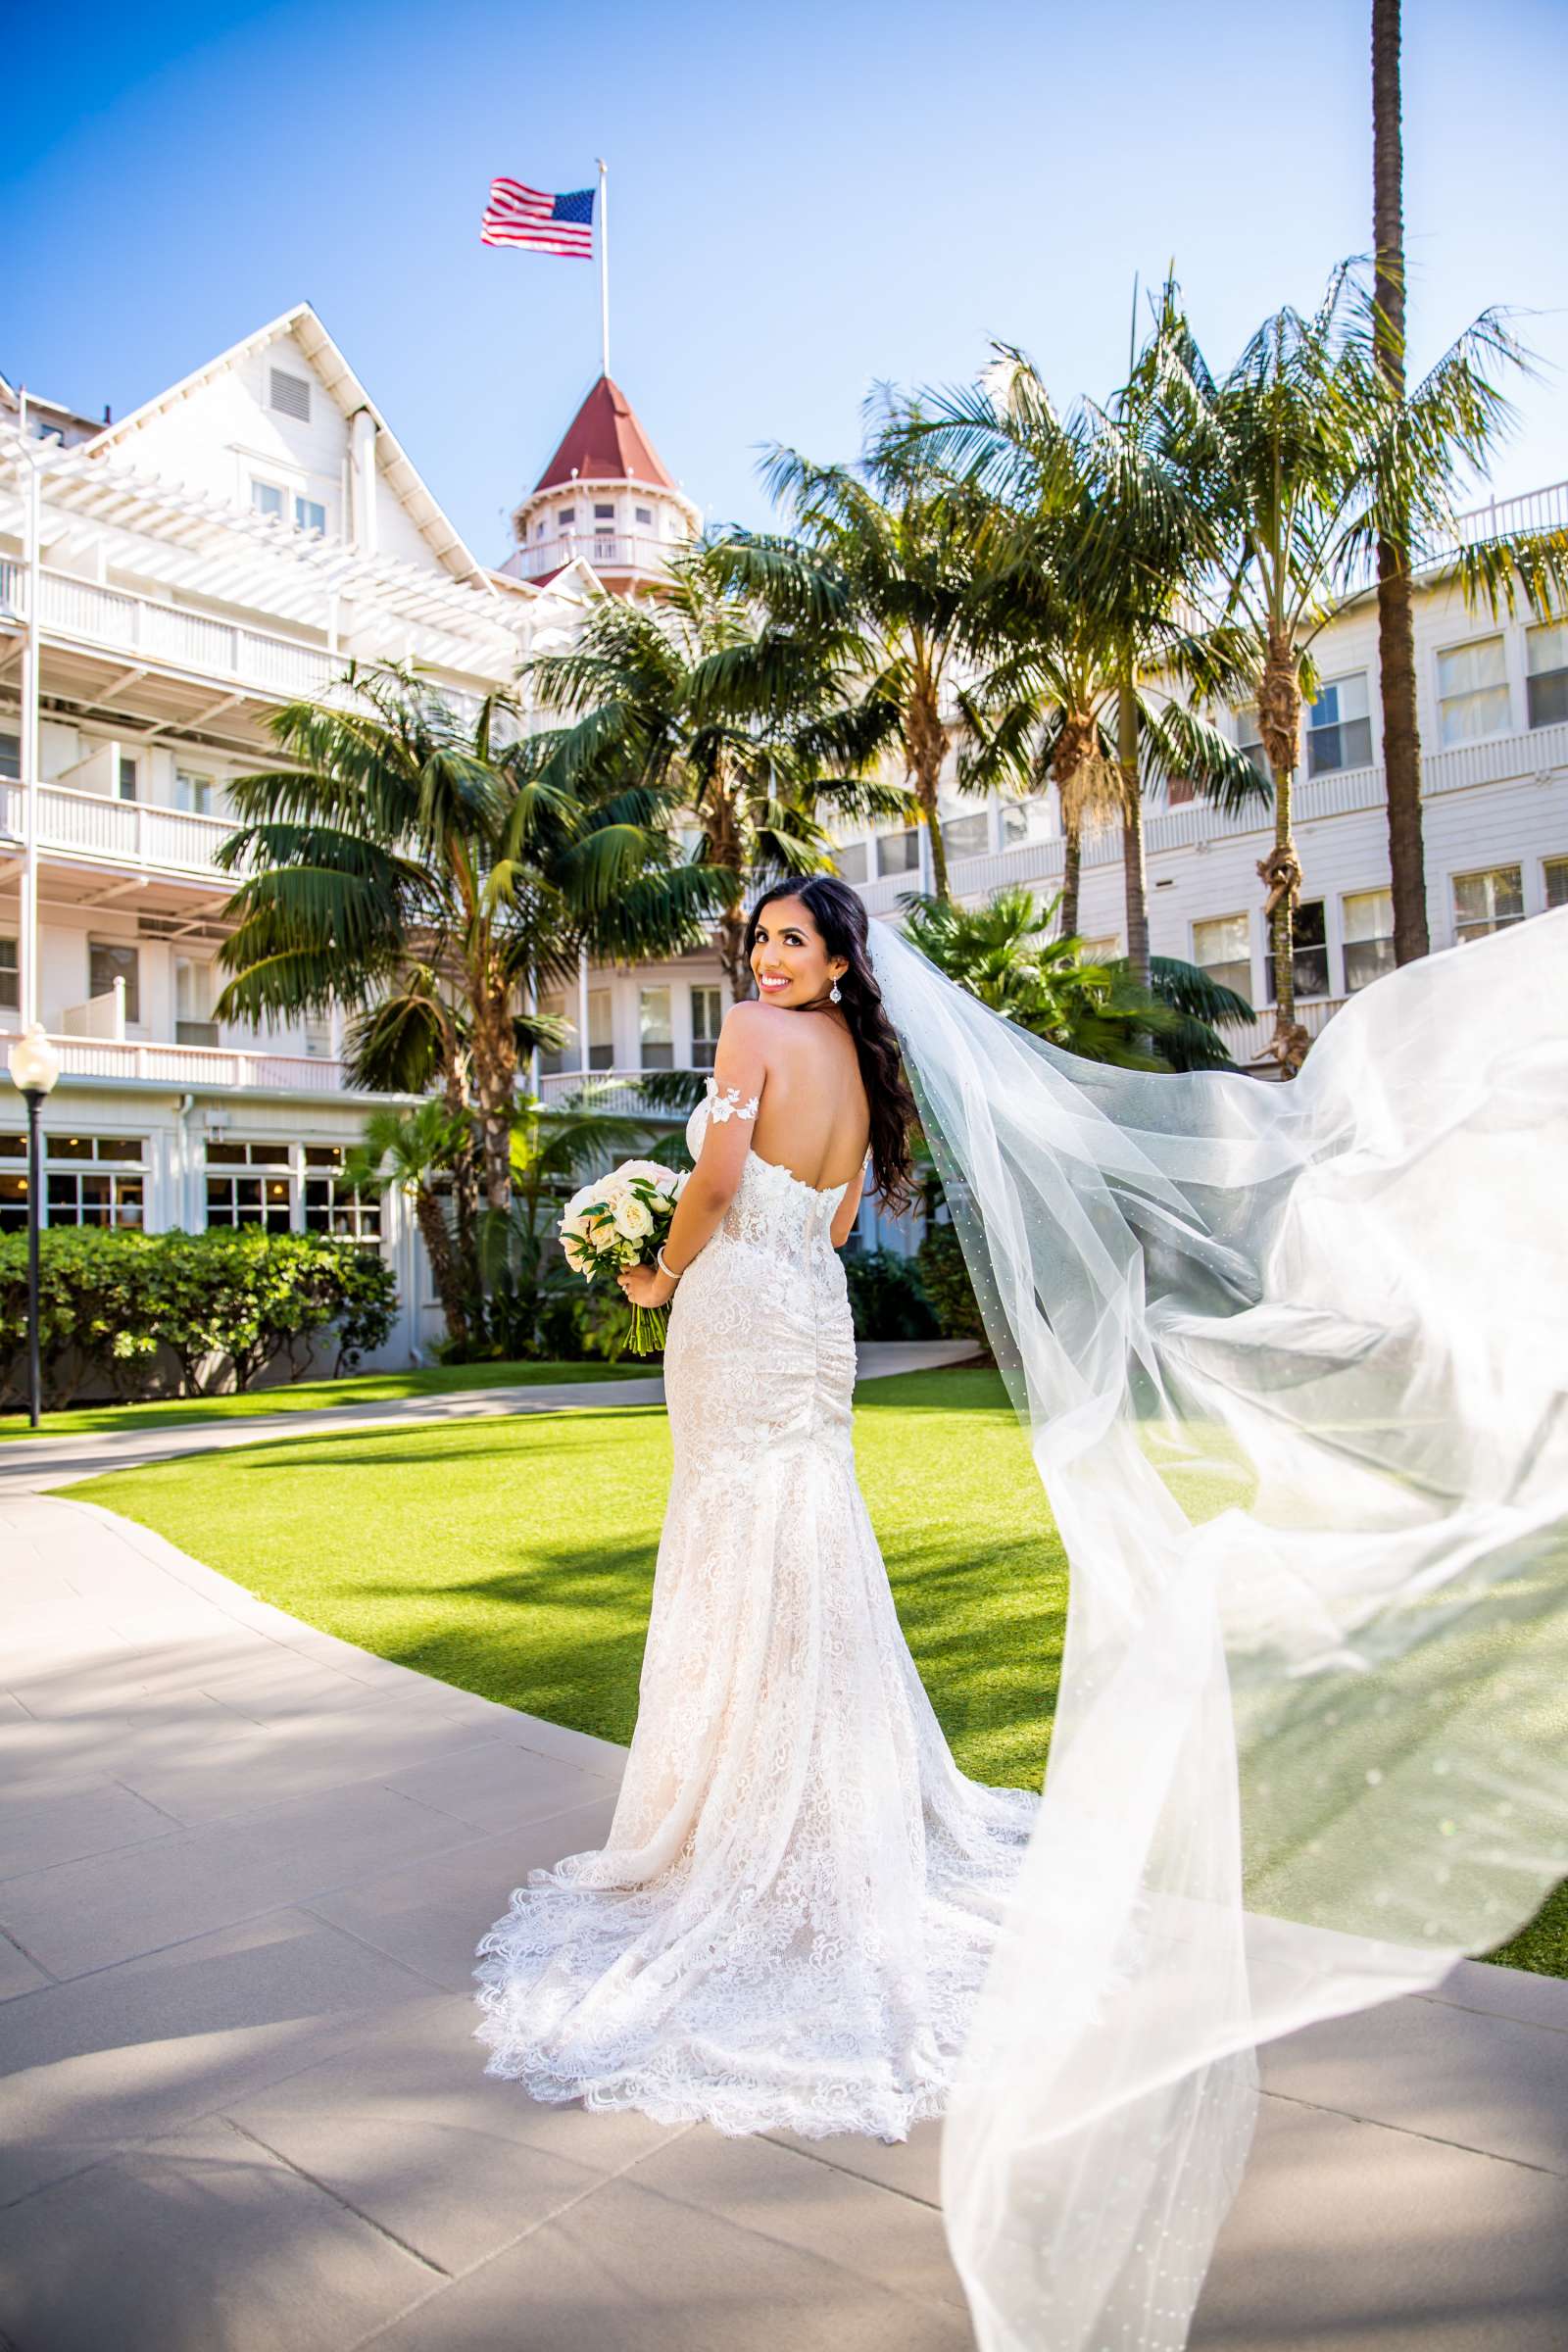 Hotel Del Coronado Wedding, Sarah and Kyle Wedding Photo #6 by True Photography